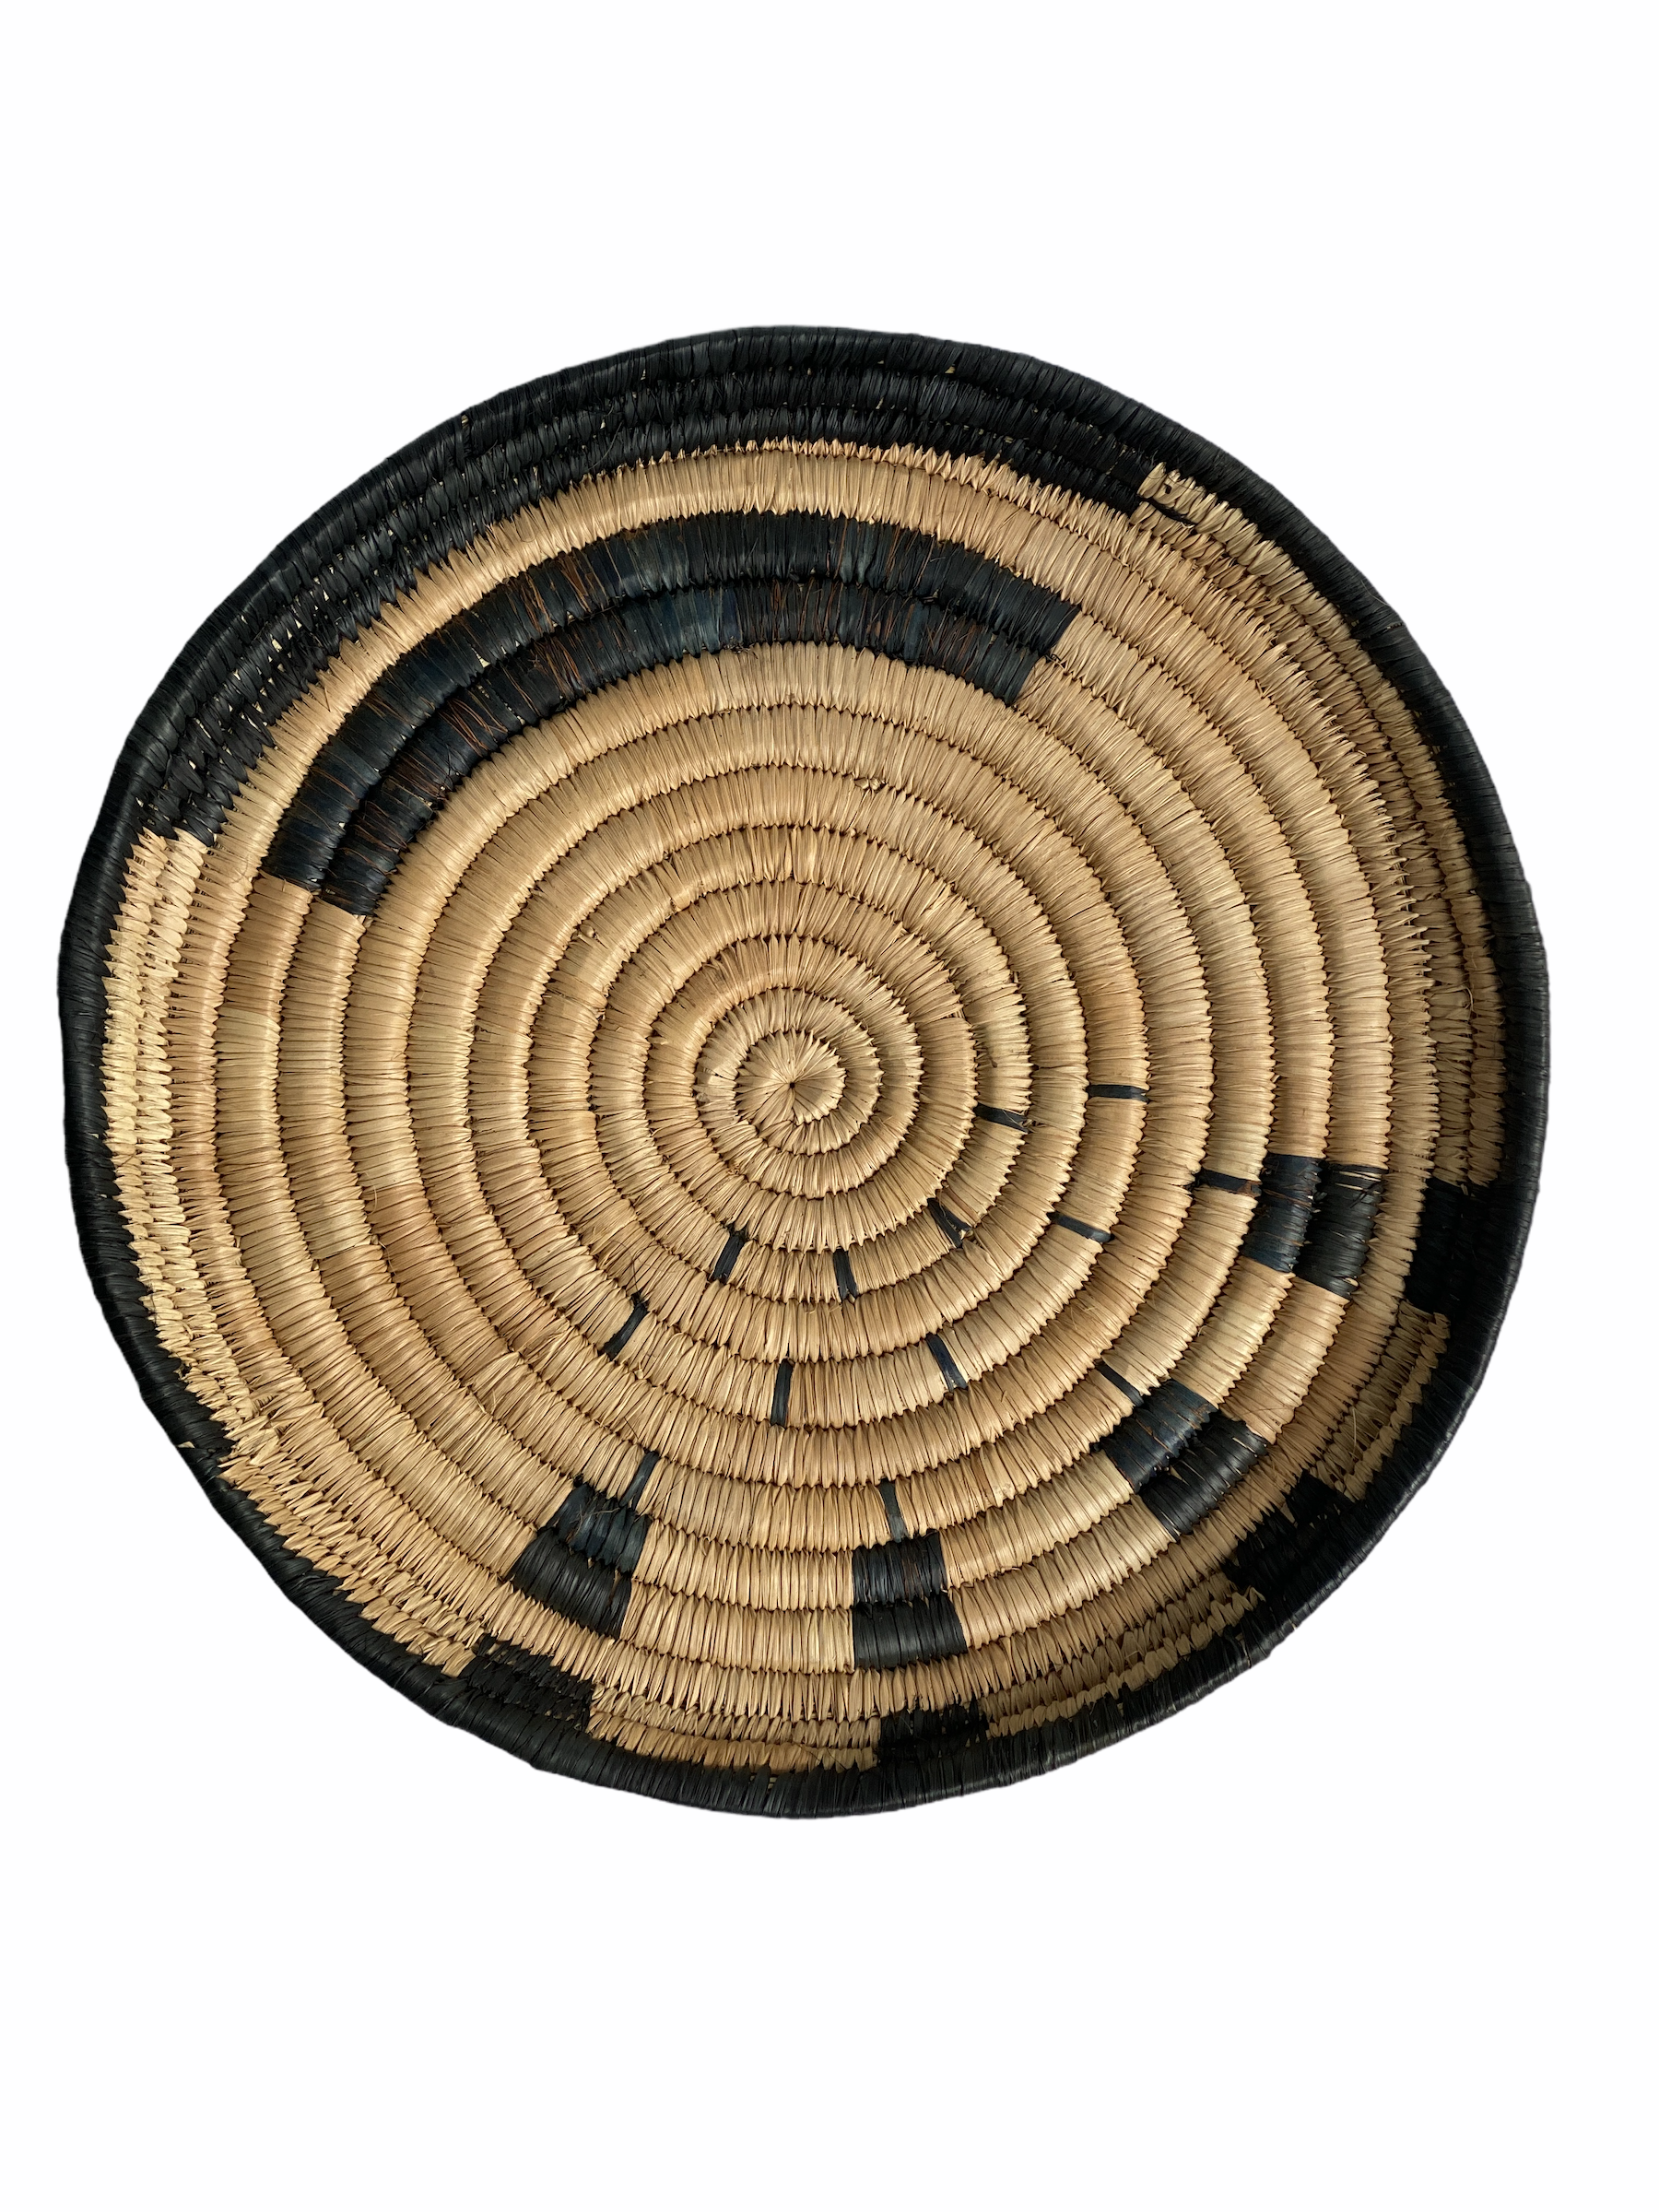 botanicalboysuk Malawi Wall Basket 50 Cm